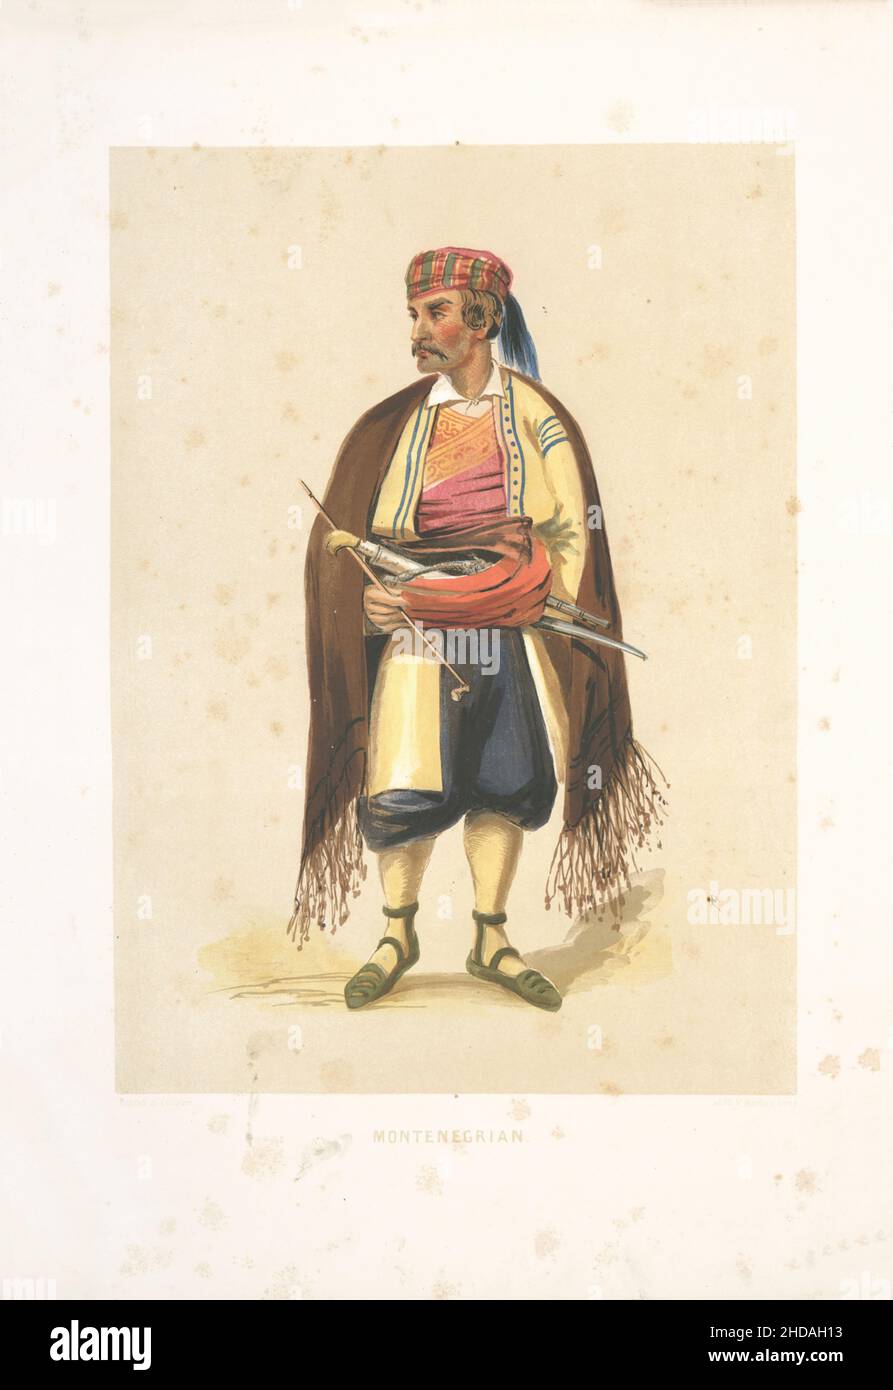 Lithographie de couleur vintage de l'Empire ottoman: Montenegrian 1854, par Forbes Mac Bean (artiste) et Justin Sutcliffe (lithographe) Banque D'Images